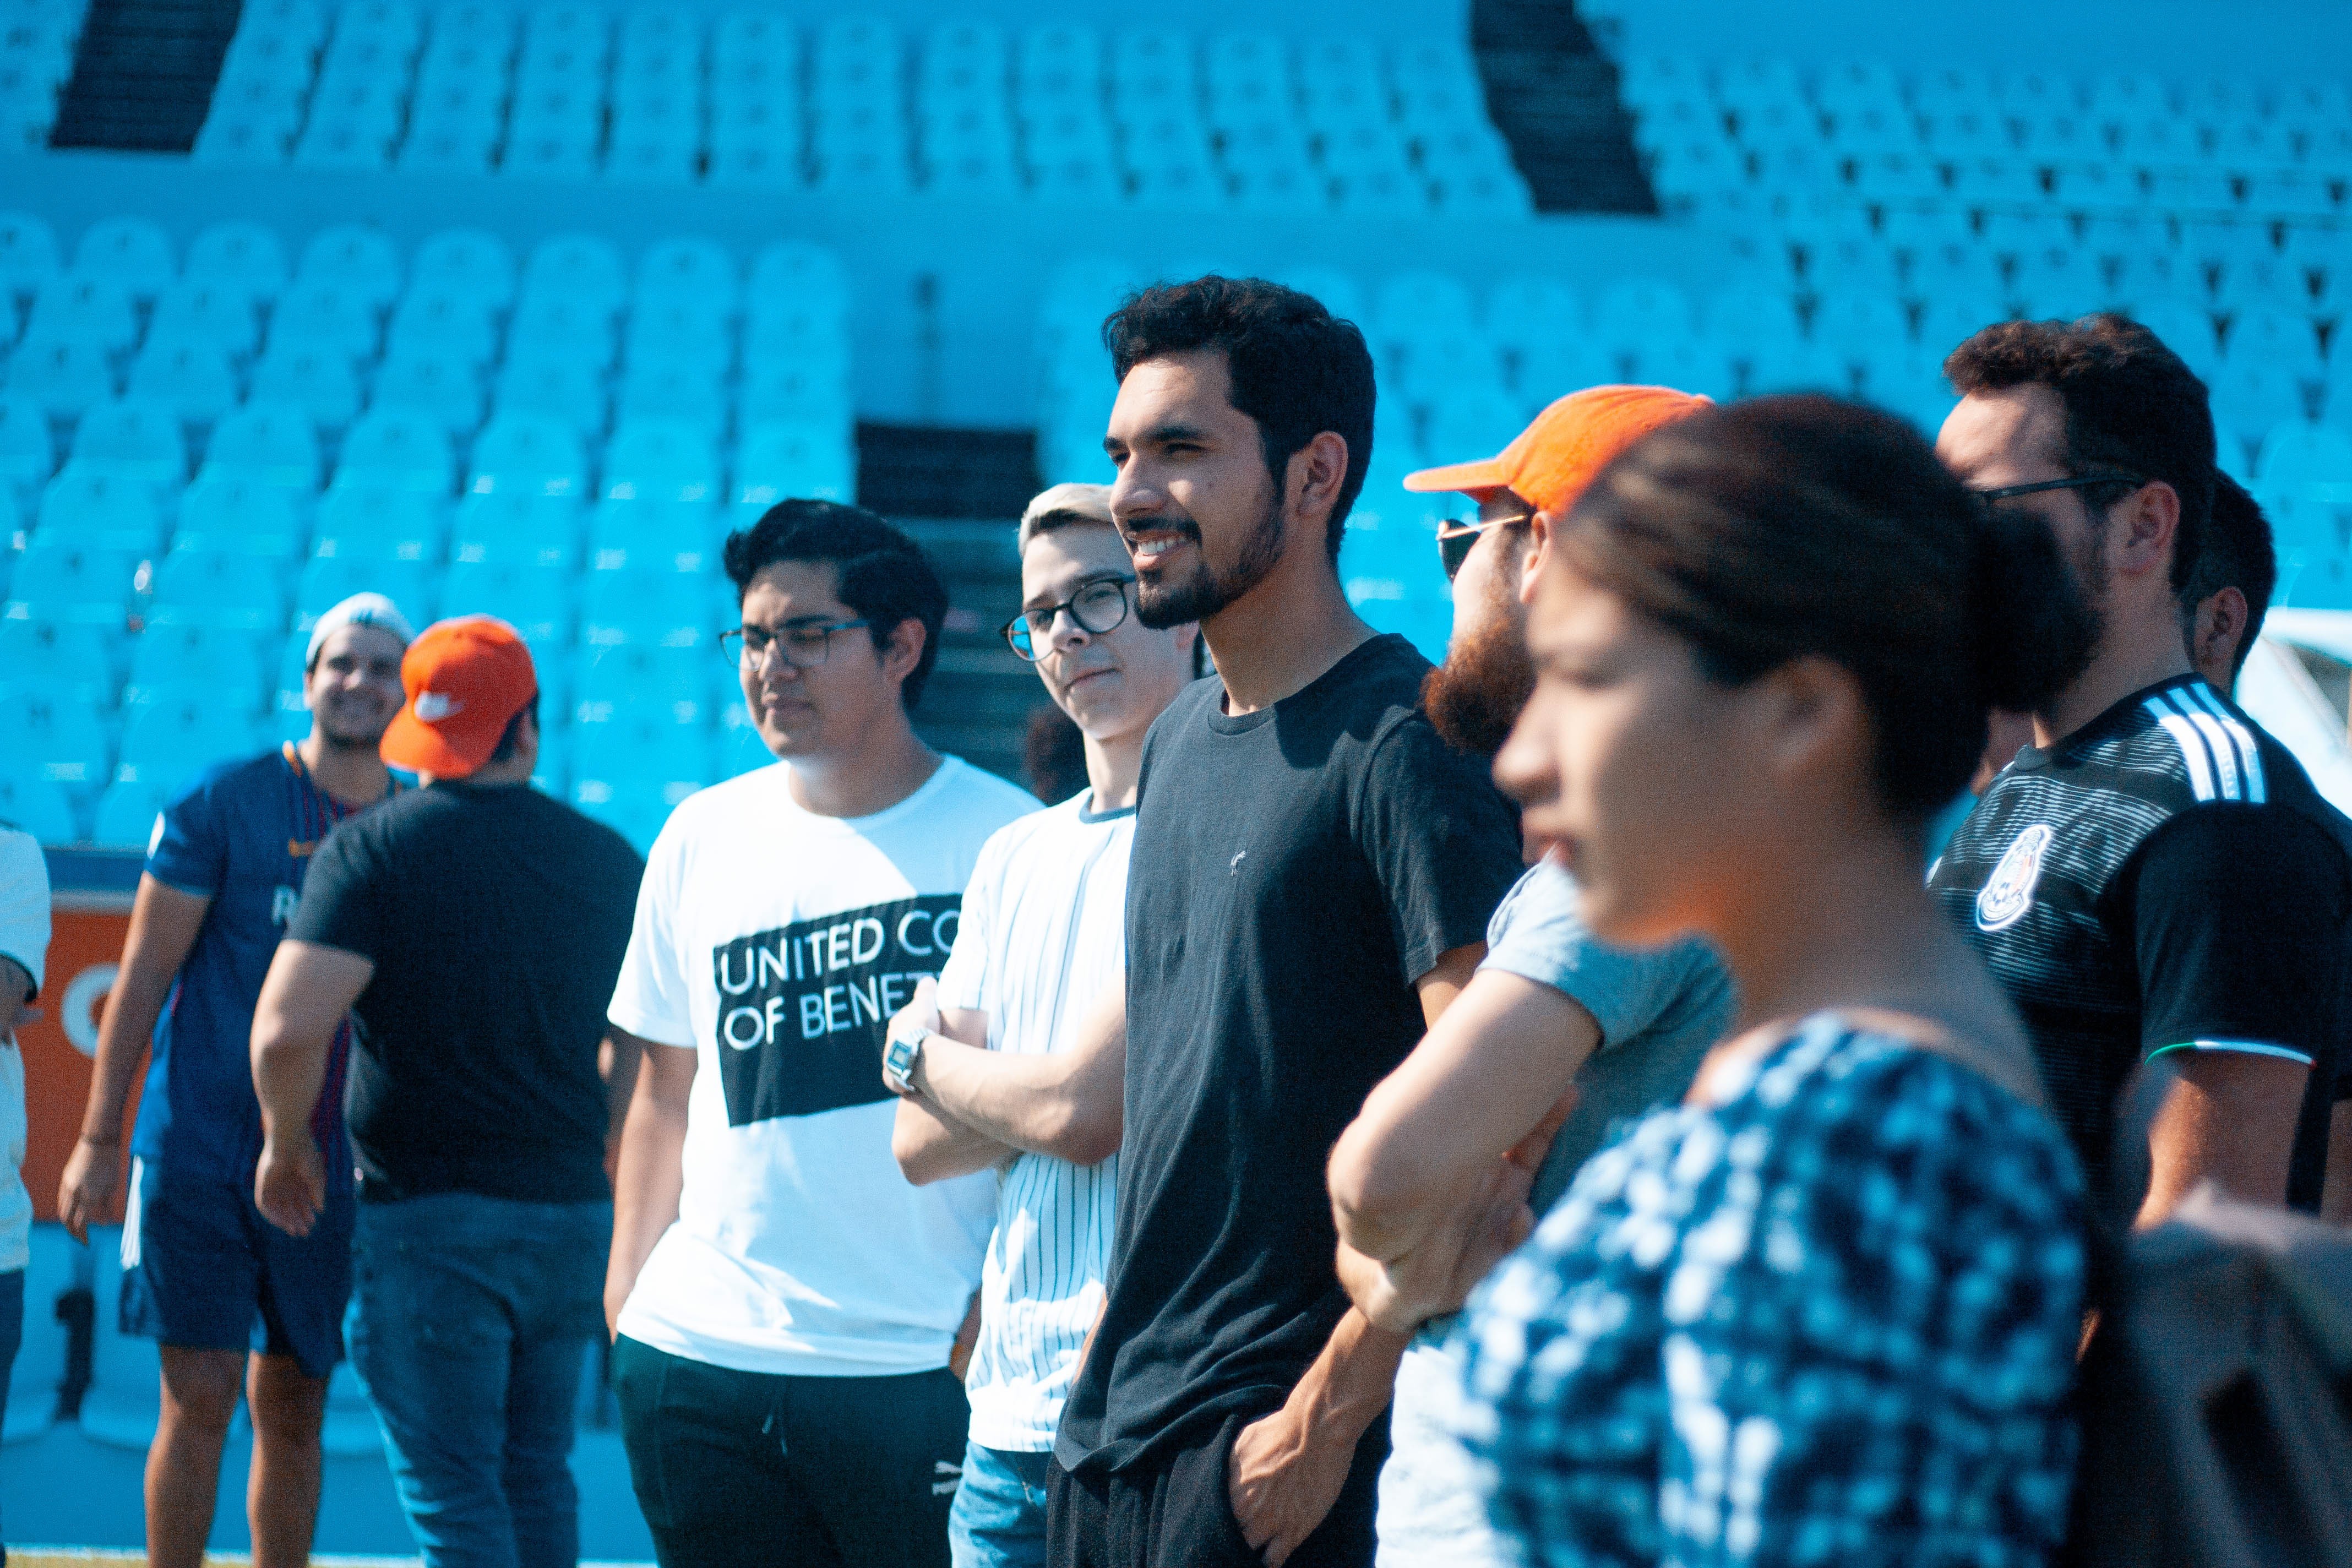 Alumnos del Tecnológico de Monterrey viviendo su Semanai en campus Tampico